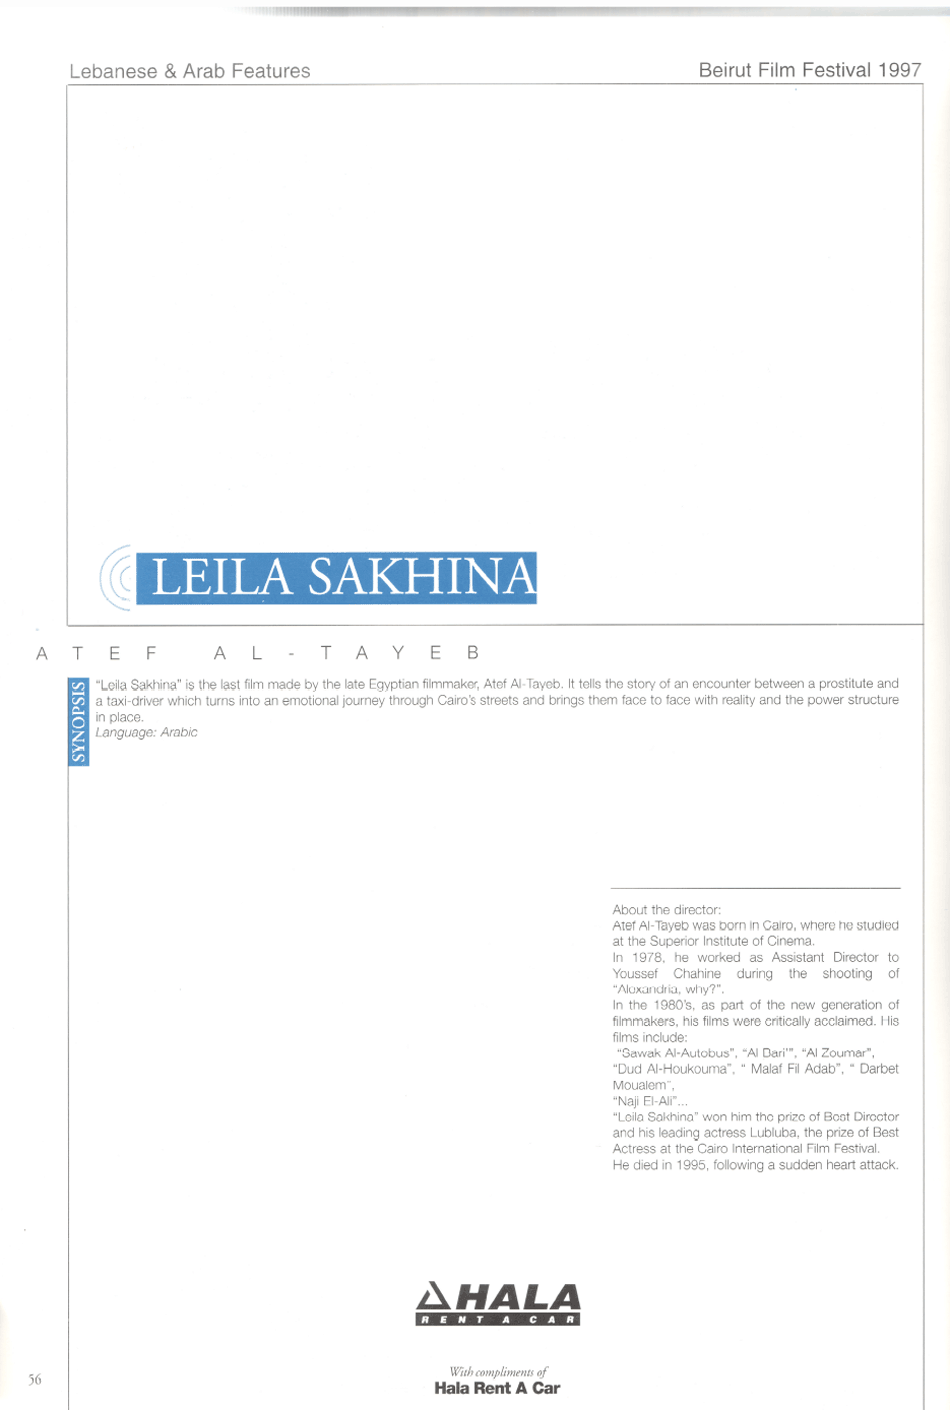 leila-sakhina